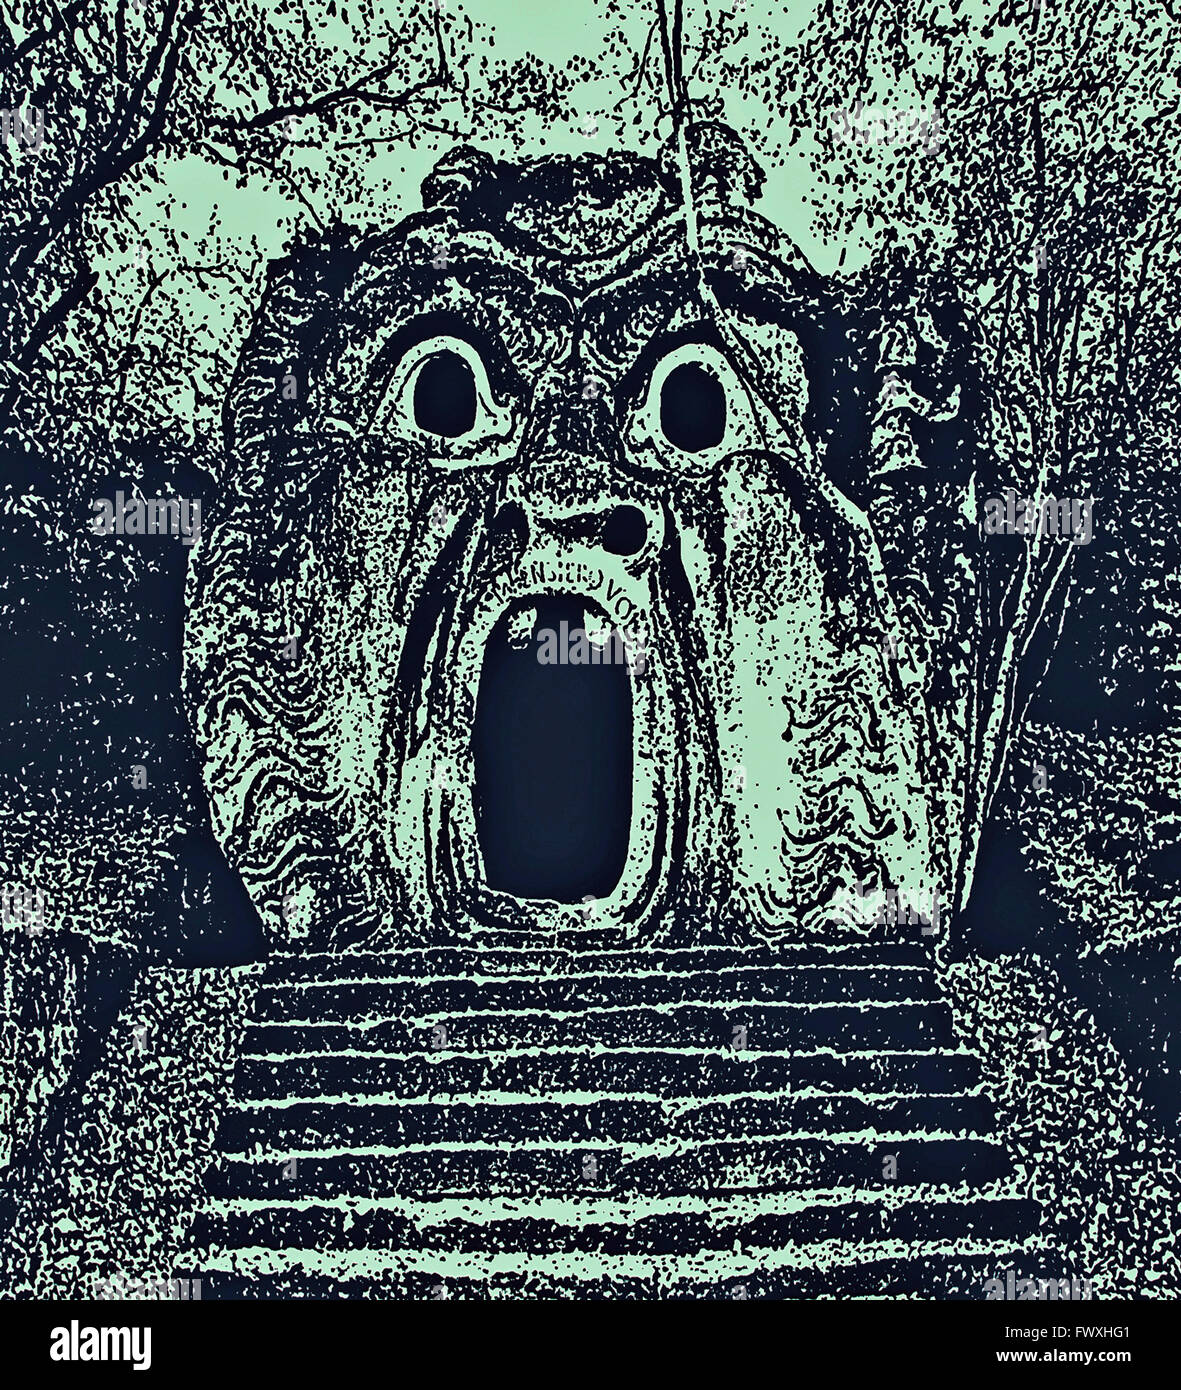 La photographie de la sculpture antique comme gravure ancienne, représentant le visage d'un monstre effrayant. Les Jardins de Bomarzo, Italie. La photographie numérique. Banque D'Images